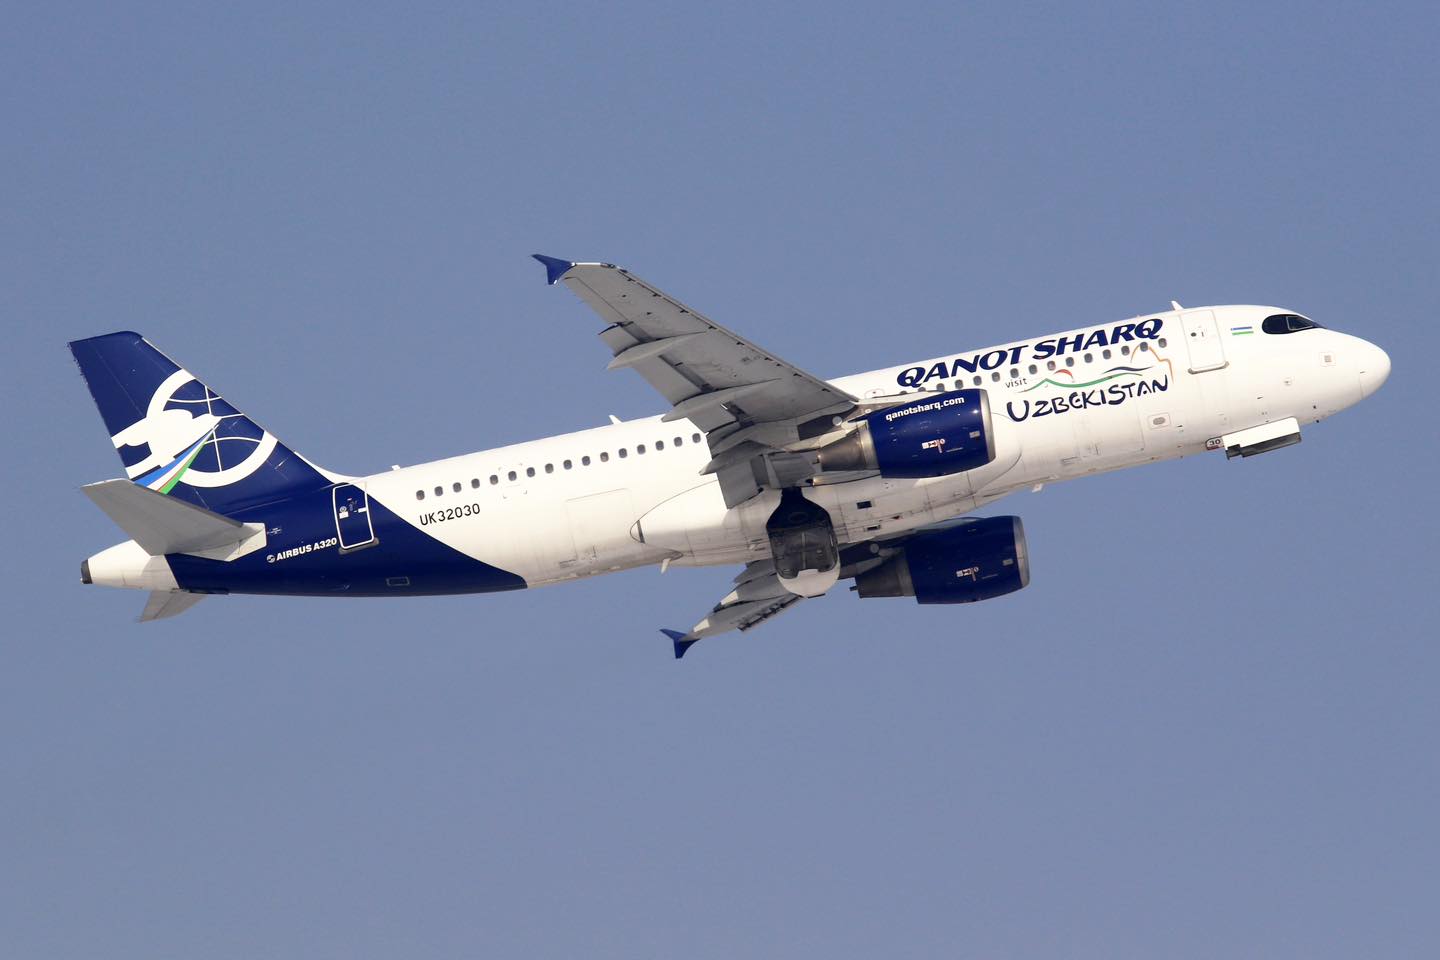 Airbus A320 společnosti Qanot Sharq Airlines. Foto: Qanot Sharq Airlines